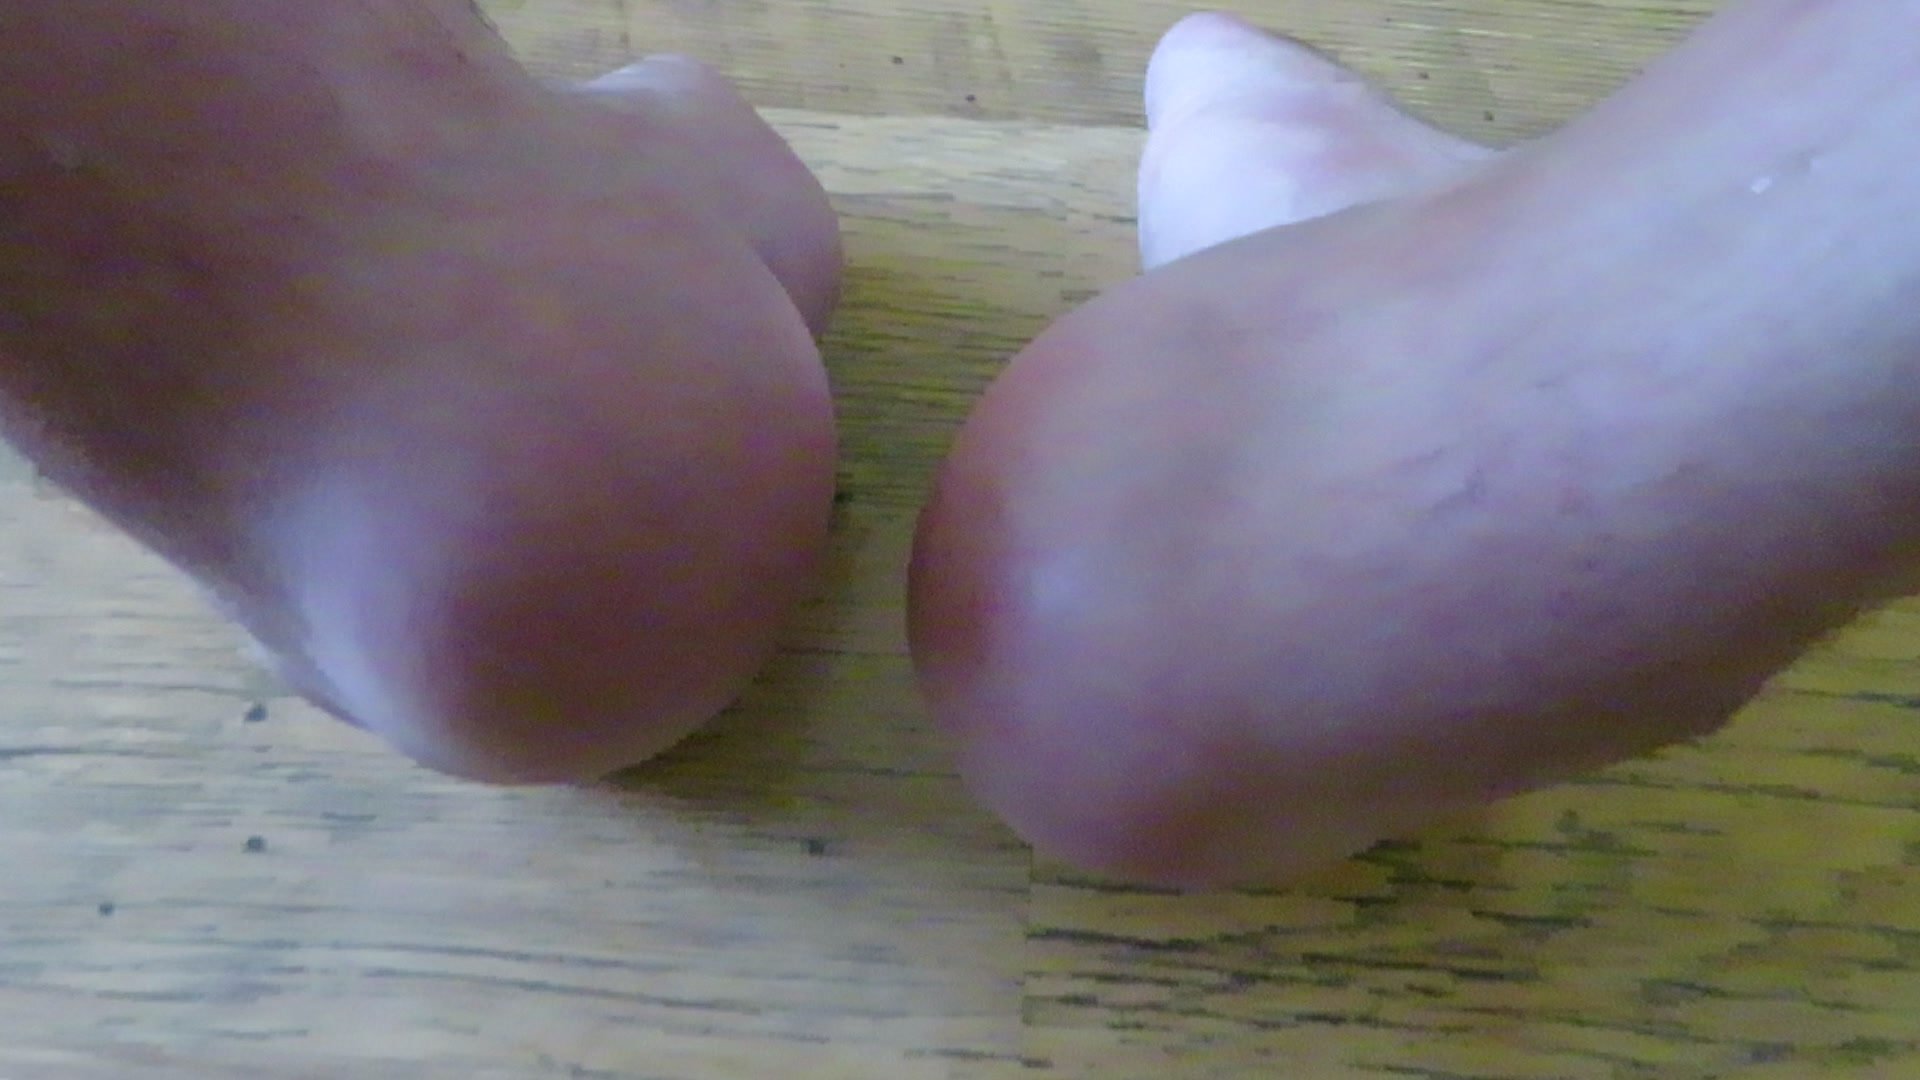 Male feet with meaty heels